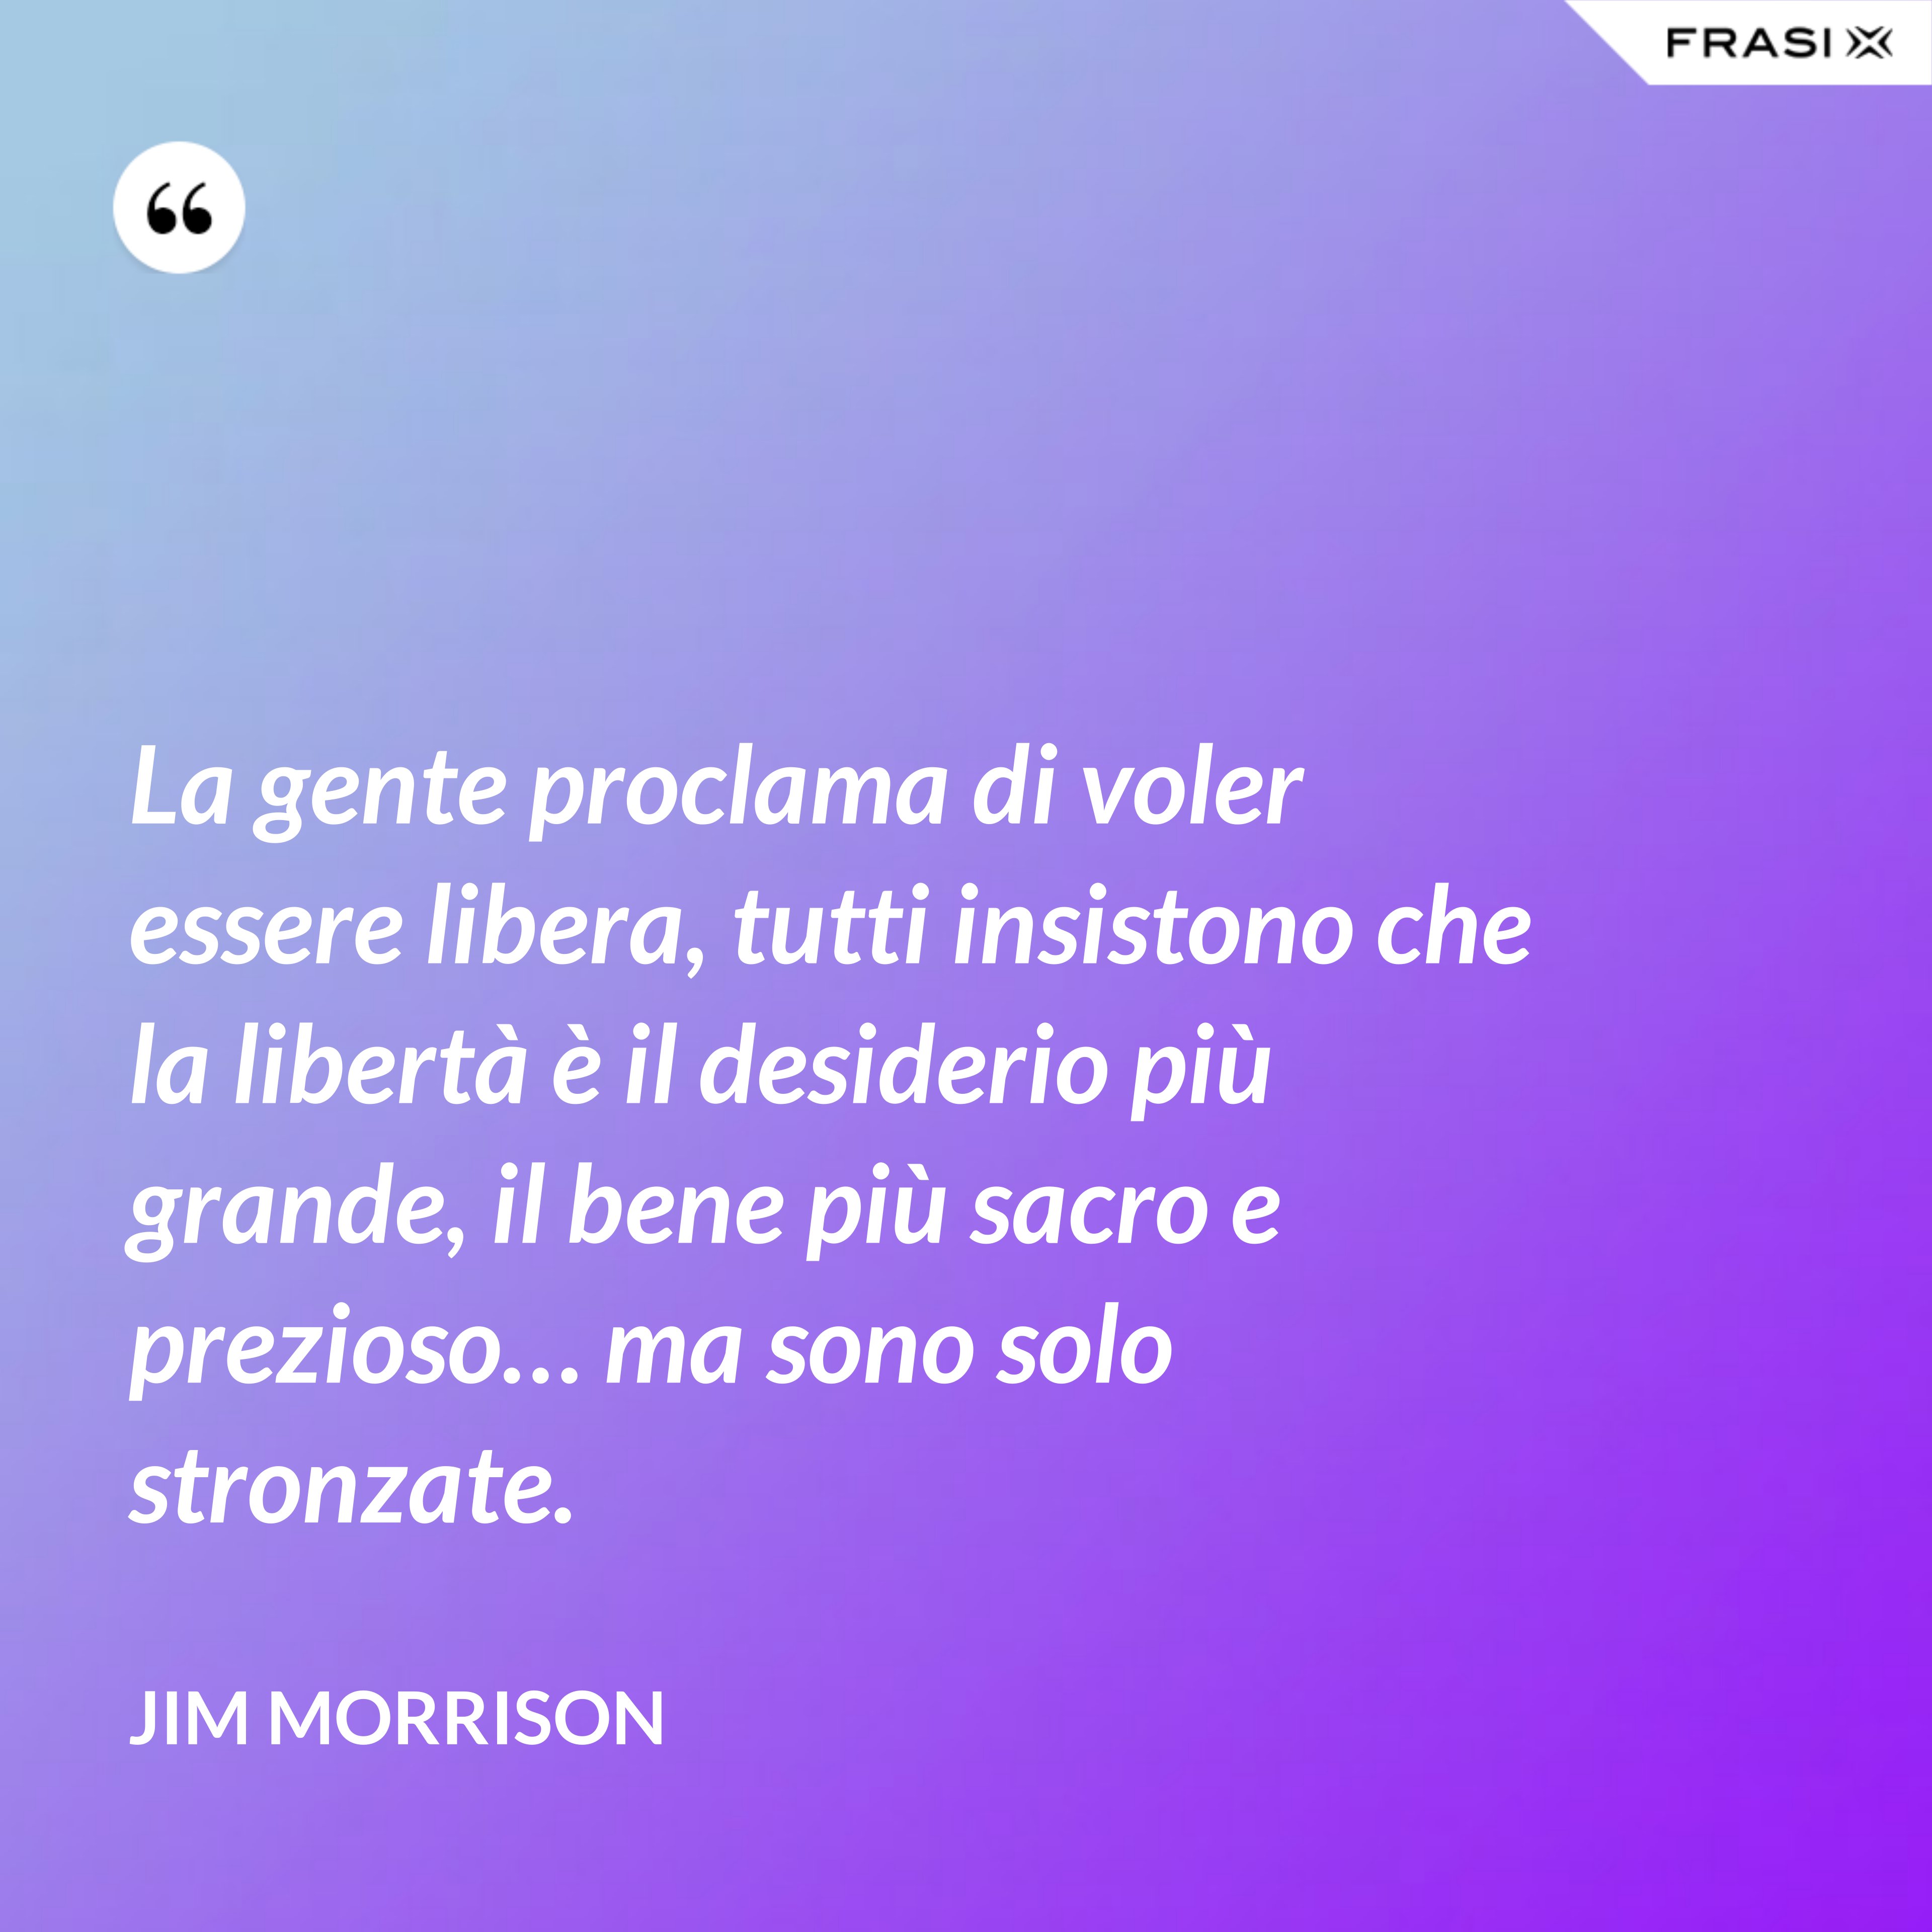 La gente proclama di voler essere libera, tutti insistono che la libertà è il desiderio più grande, il bene più sacro e prezioso… ma sono solo stronzate. - Jim Morrison